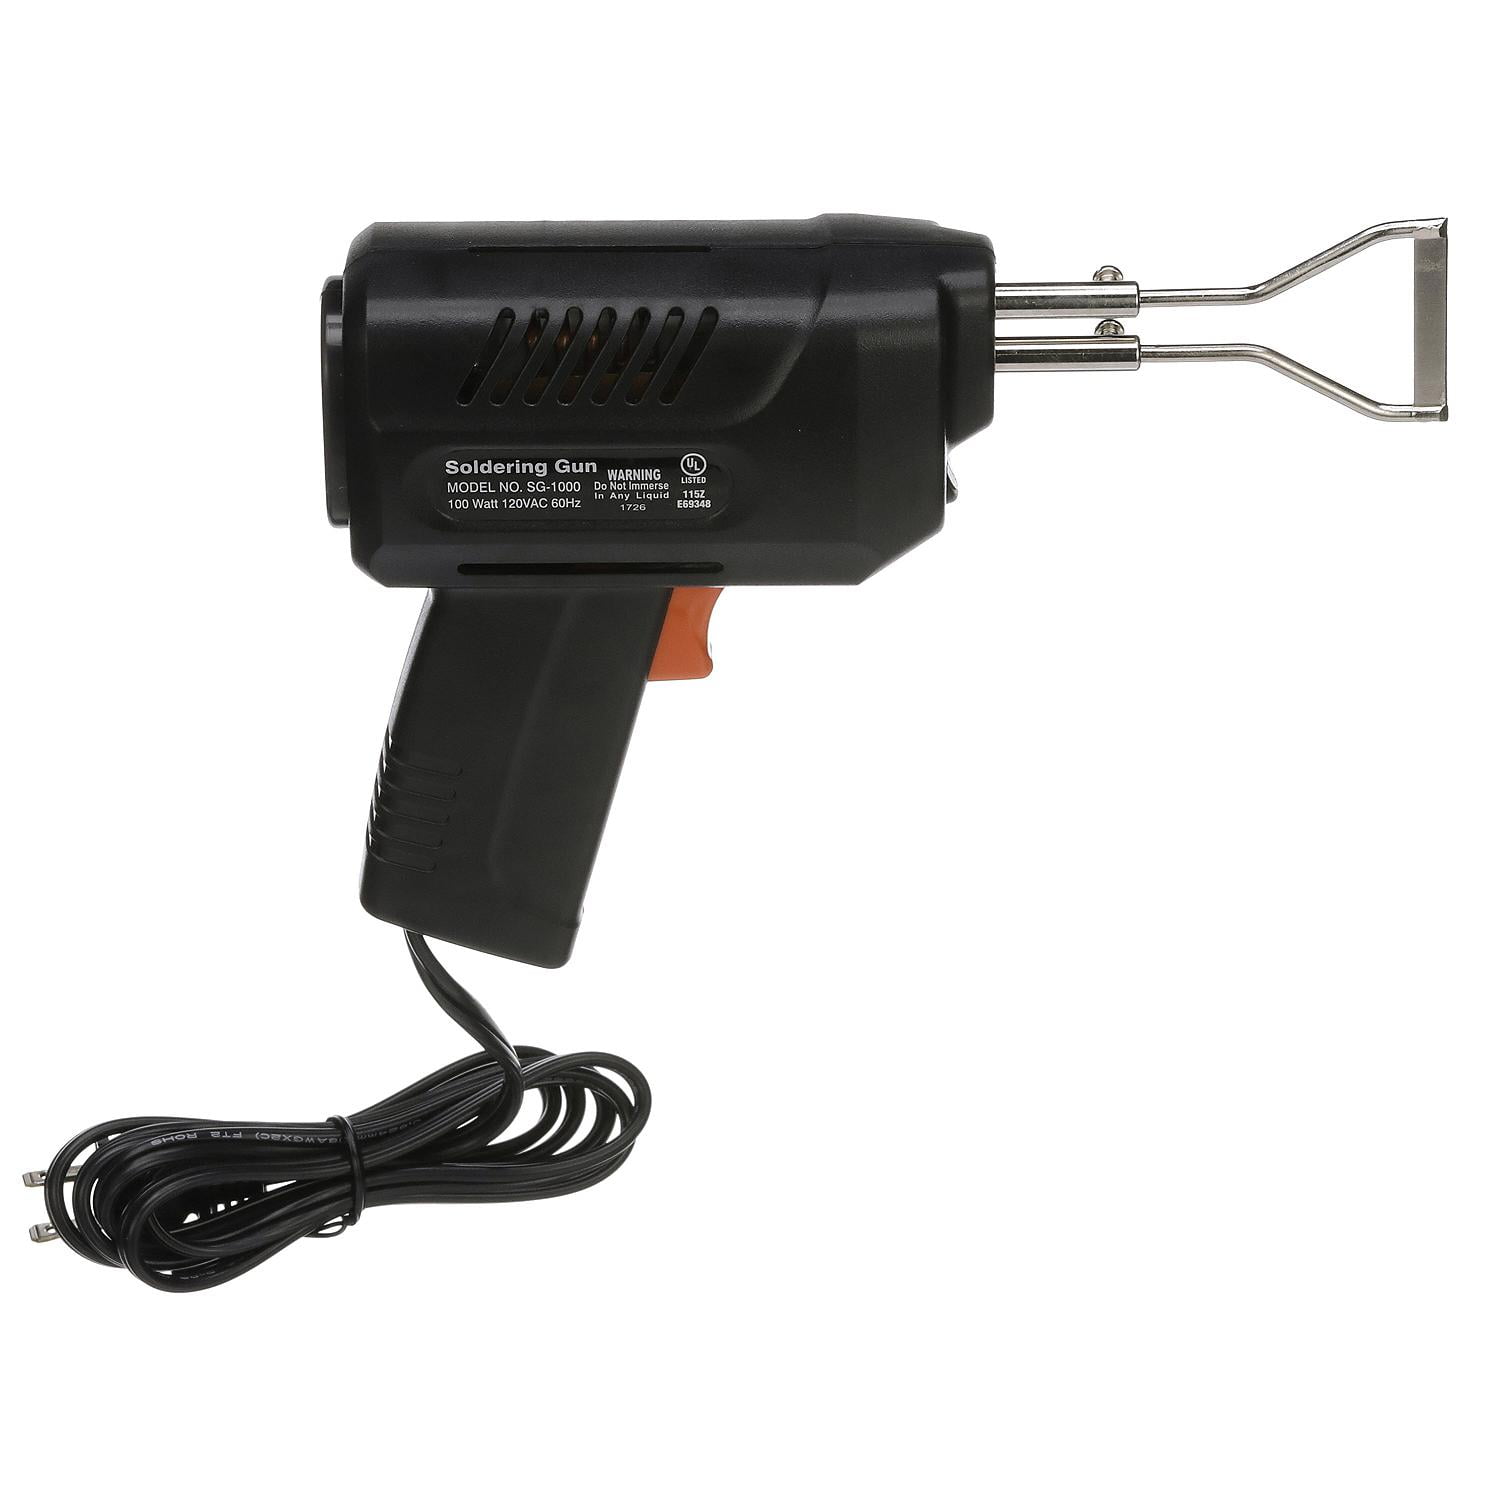 Seachoice 79901 Electric Rope Cutting Gun 